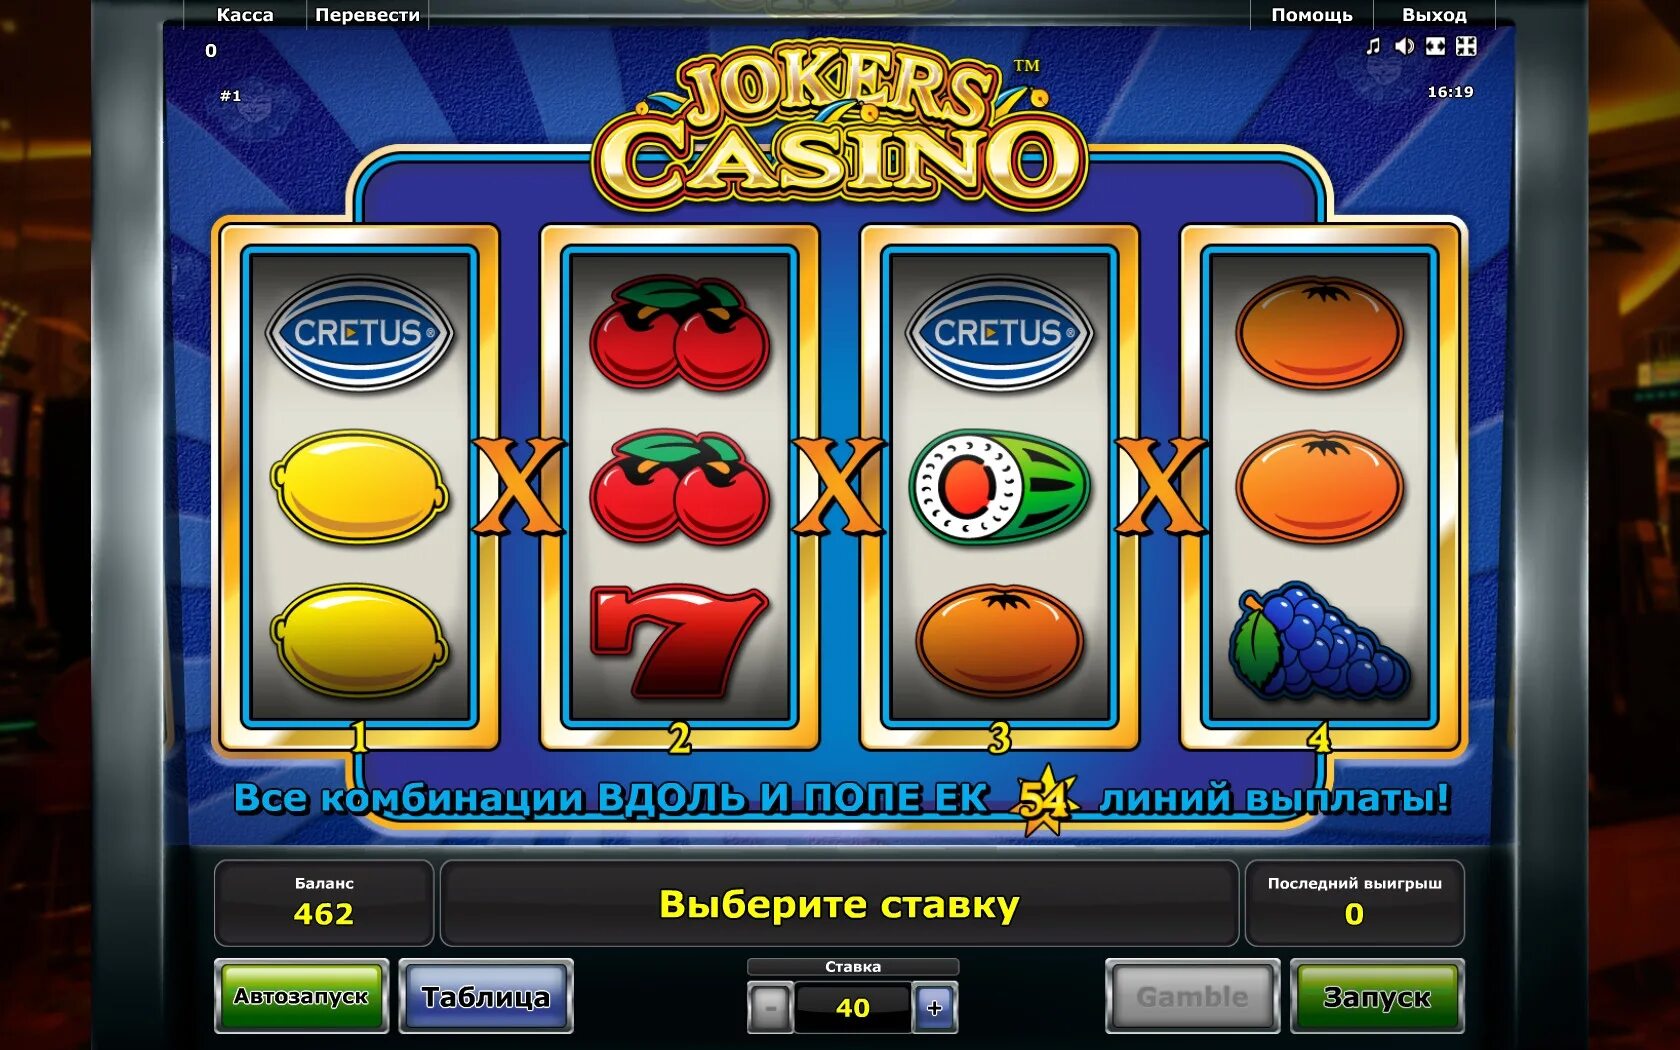 Автомат казино. Слоты казино. Экран игрового автомата в казино. Популярные аппараты казино. Играть с минимальным депозитом